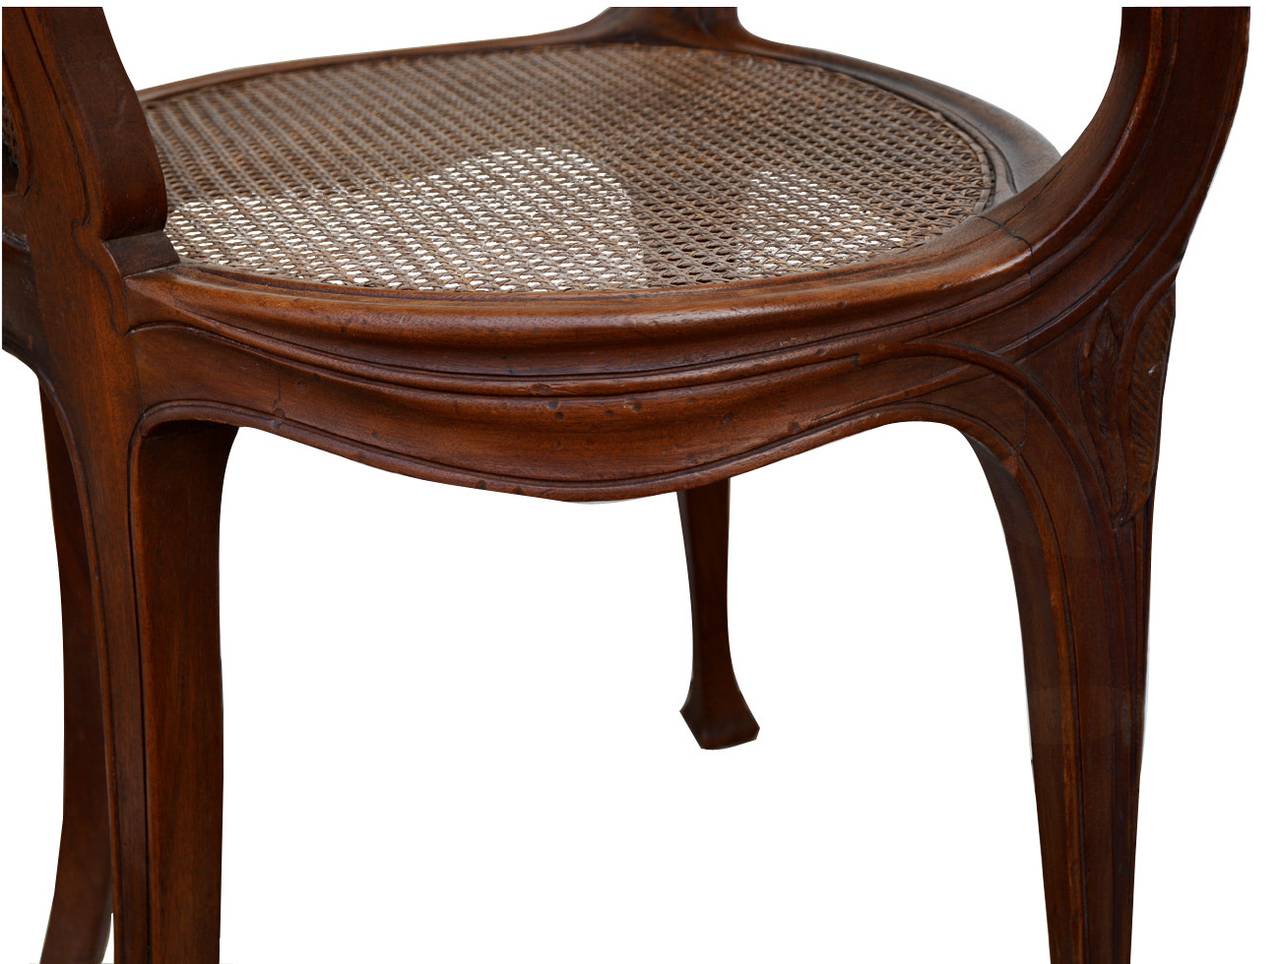 Walnut Art Nouveau Period Desk Chair, École de Nancy, Circle of Louis Majorelle, 1910s For Sale